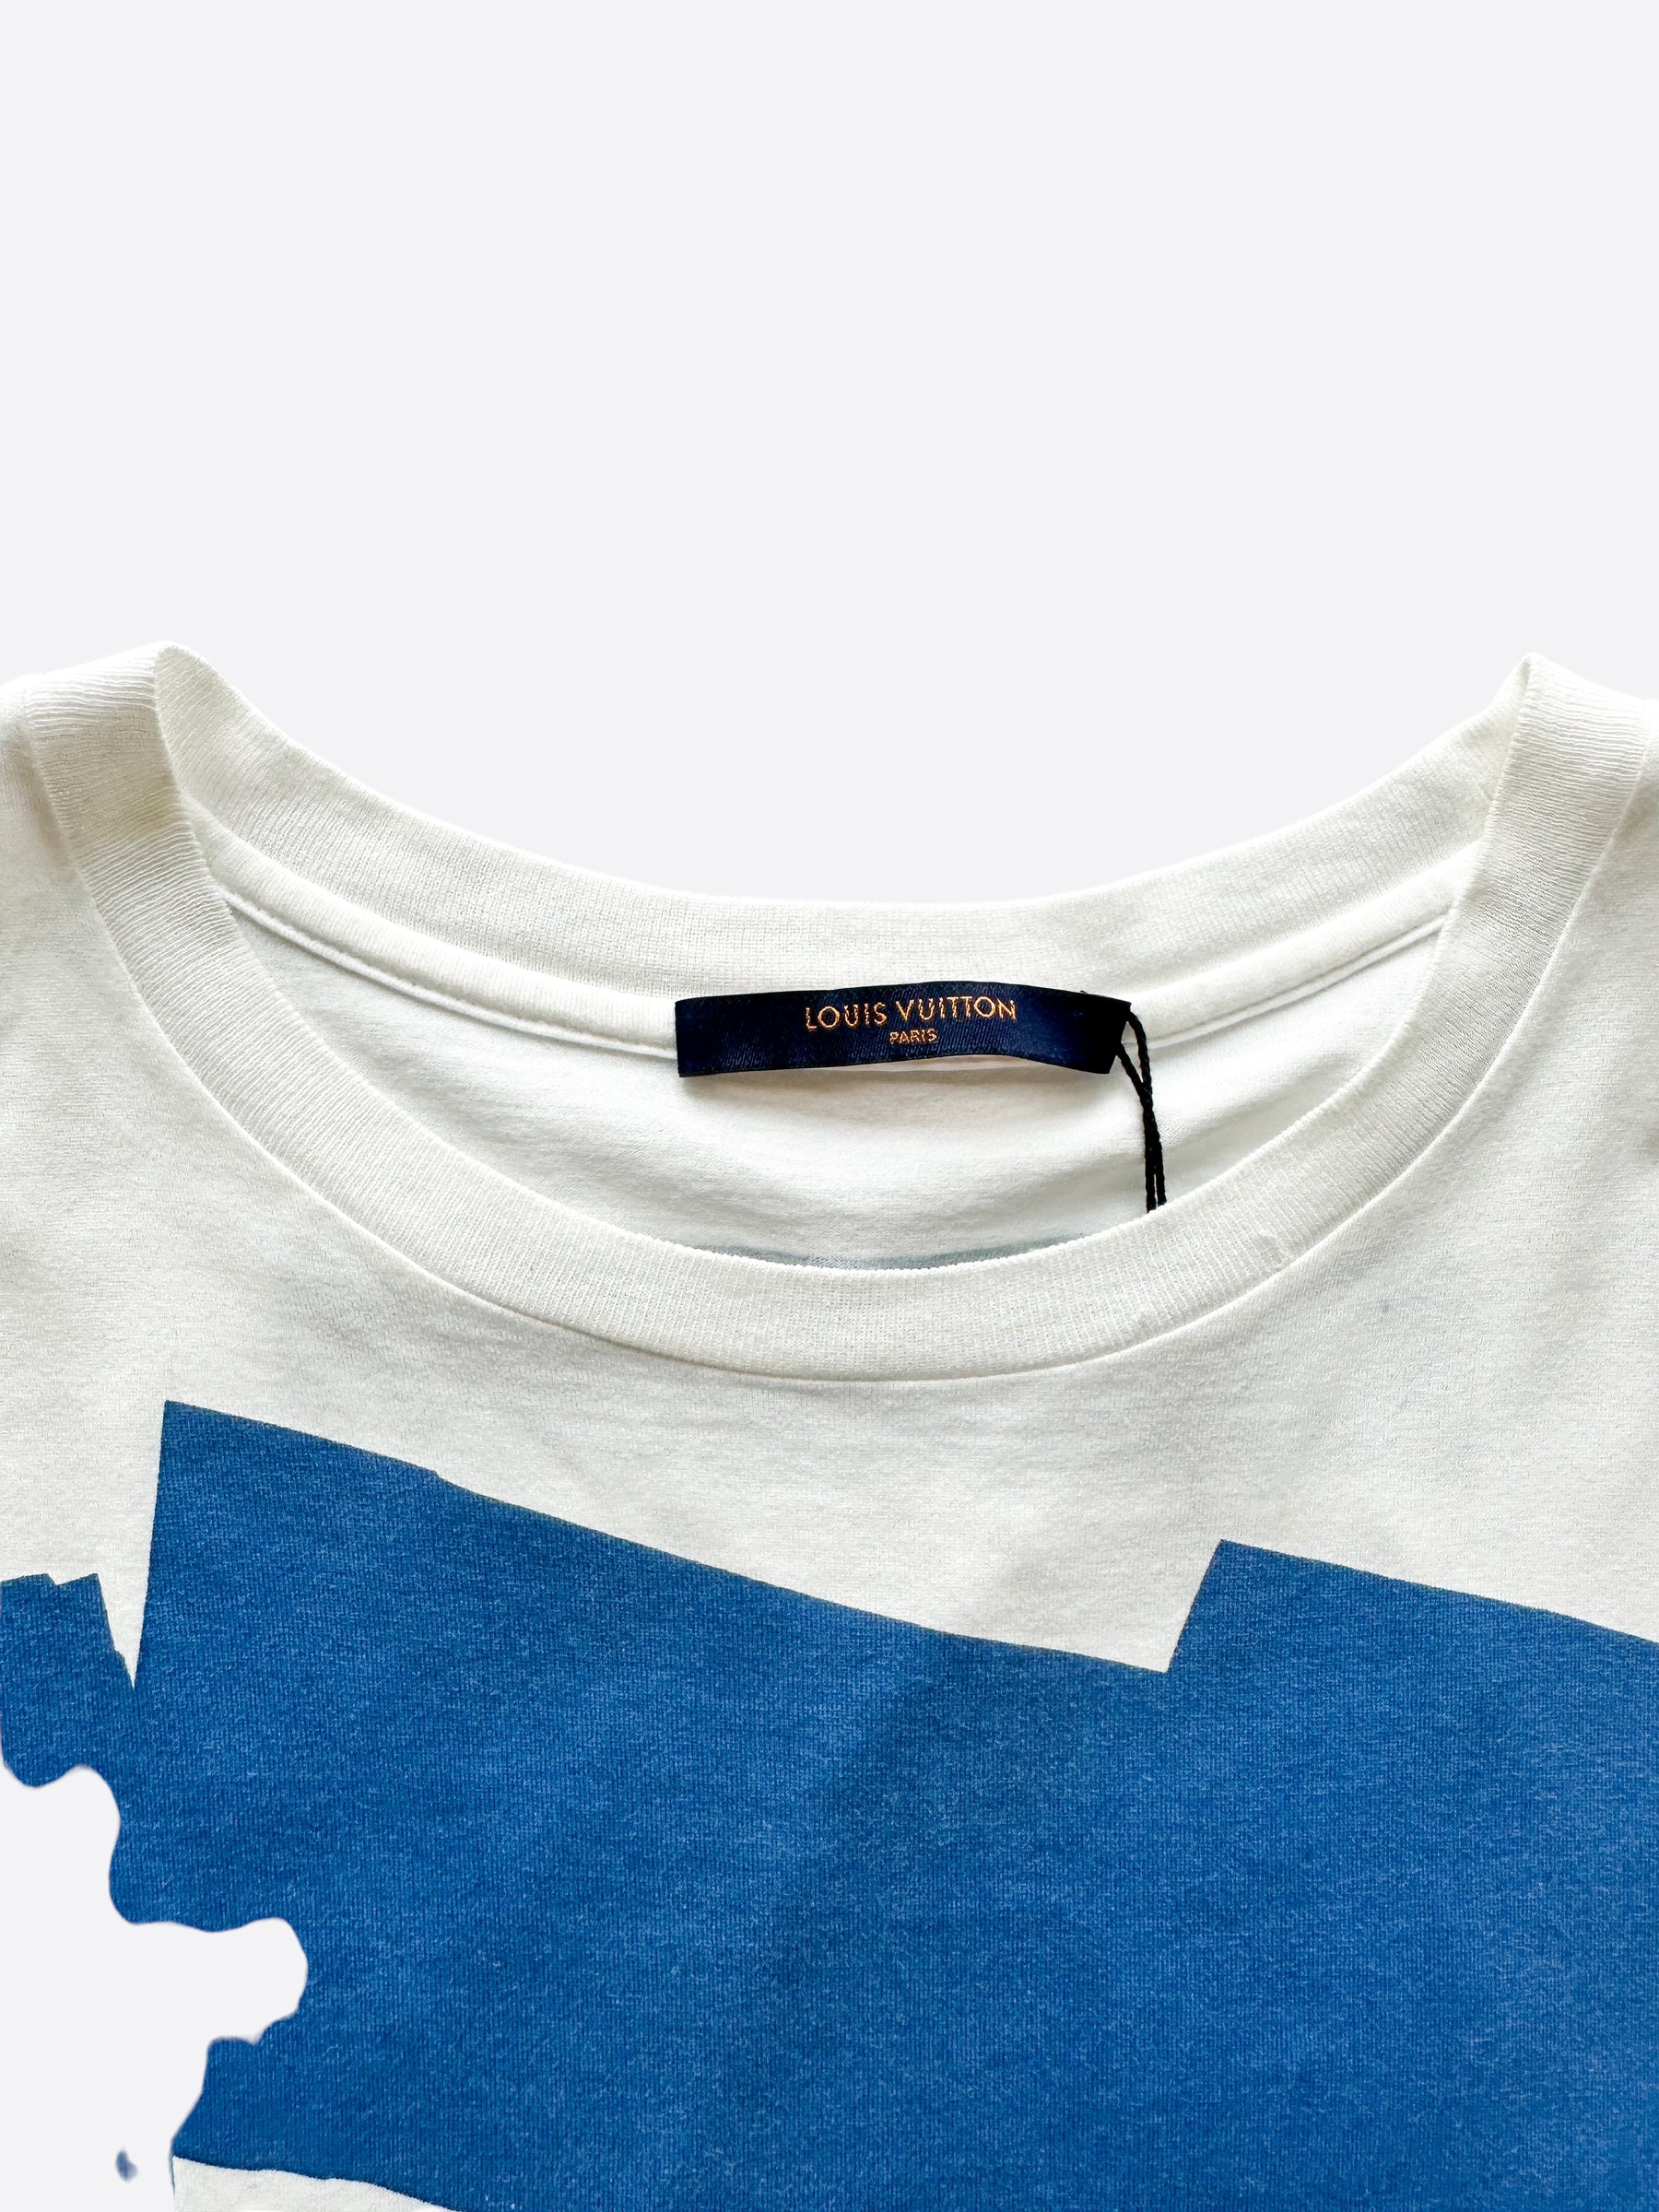 Get Buy Louis Vuitton Malletier Paris T-Shirt 